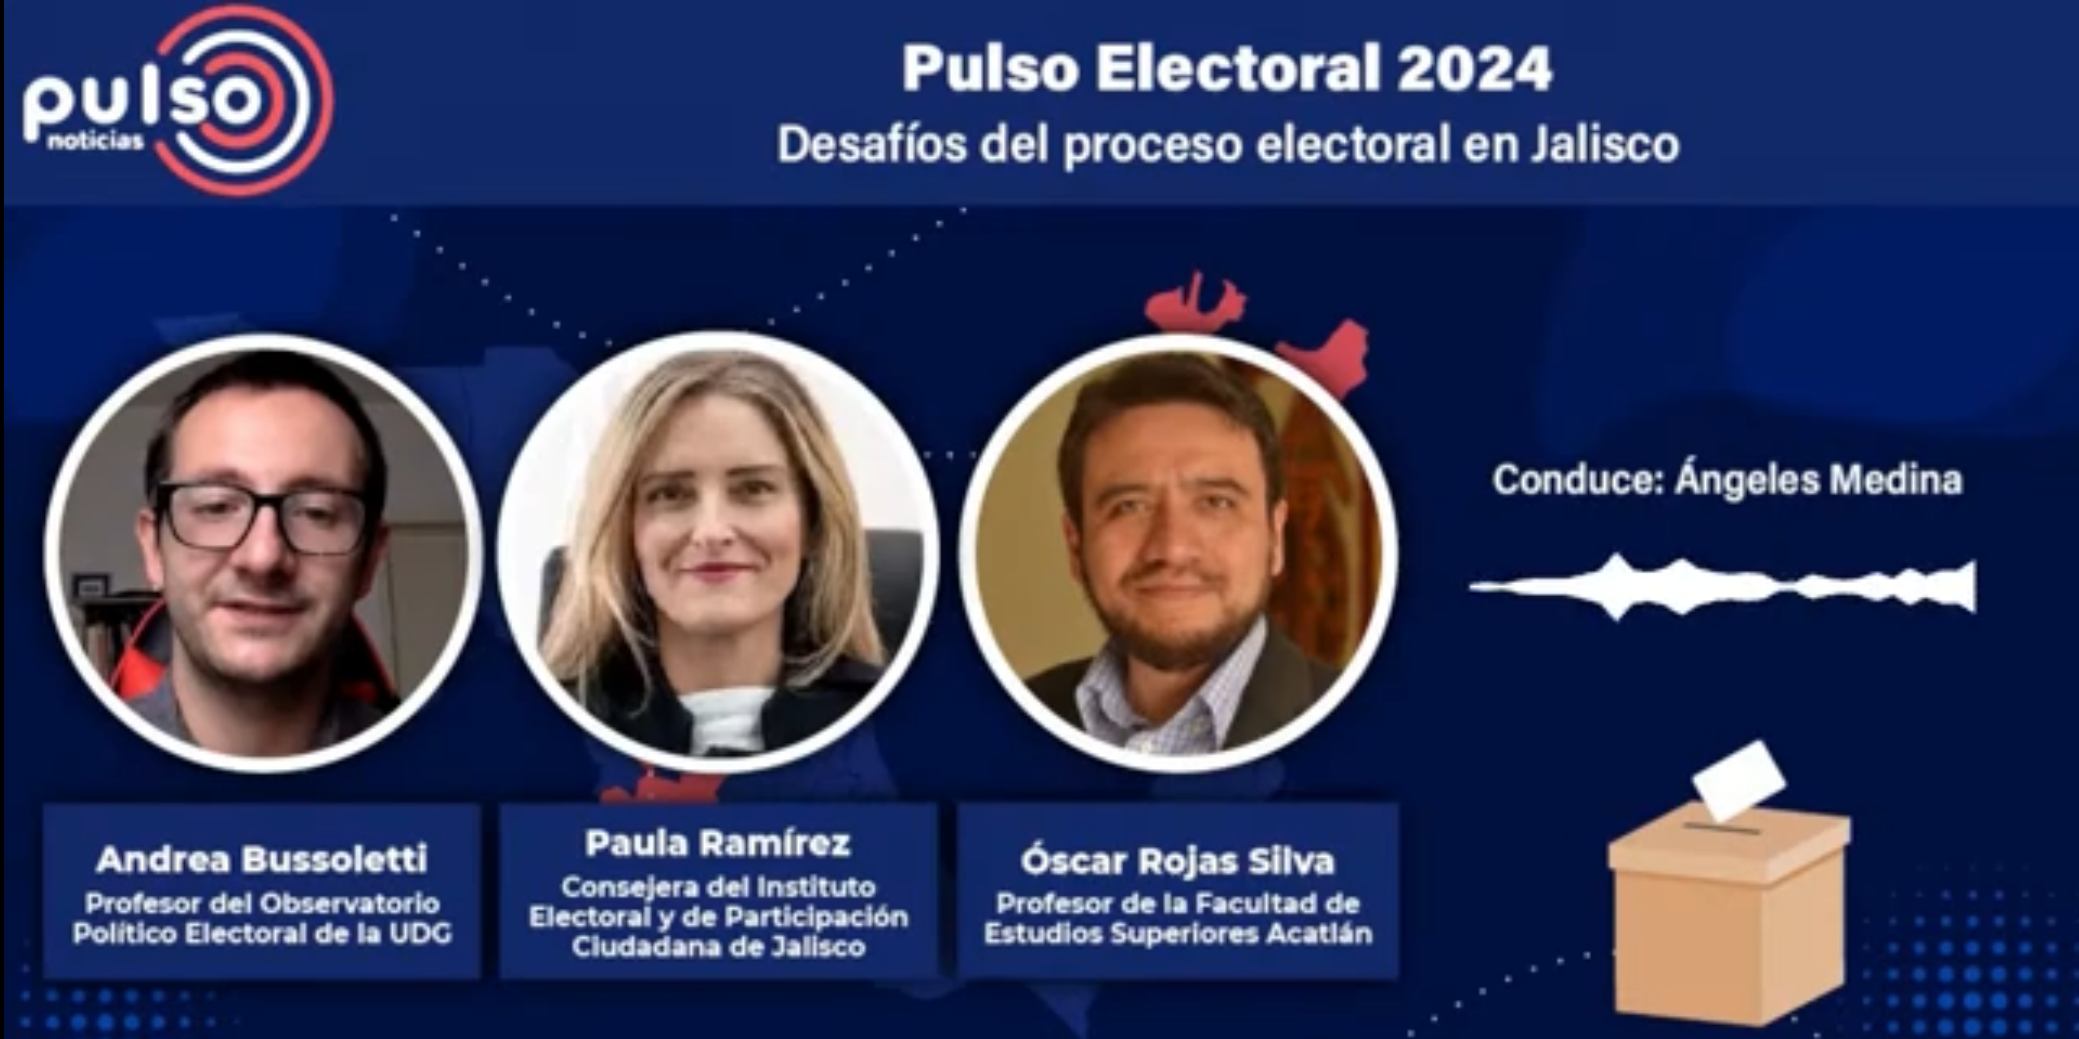 Pulso Electoral 2024: Desafíos del proceso electoral en Jalisco